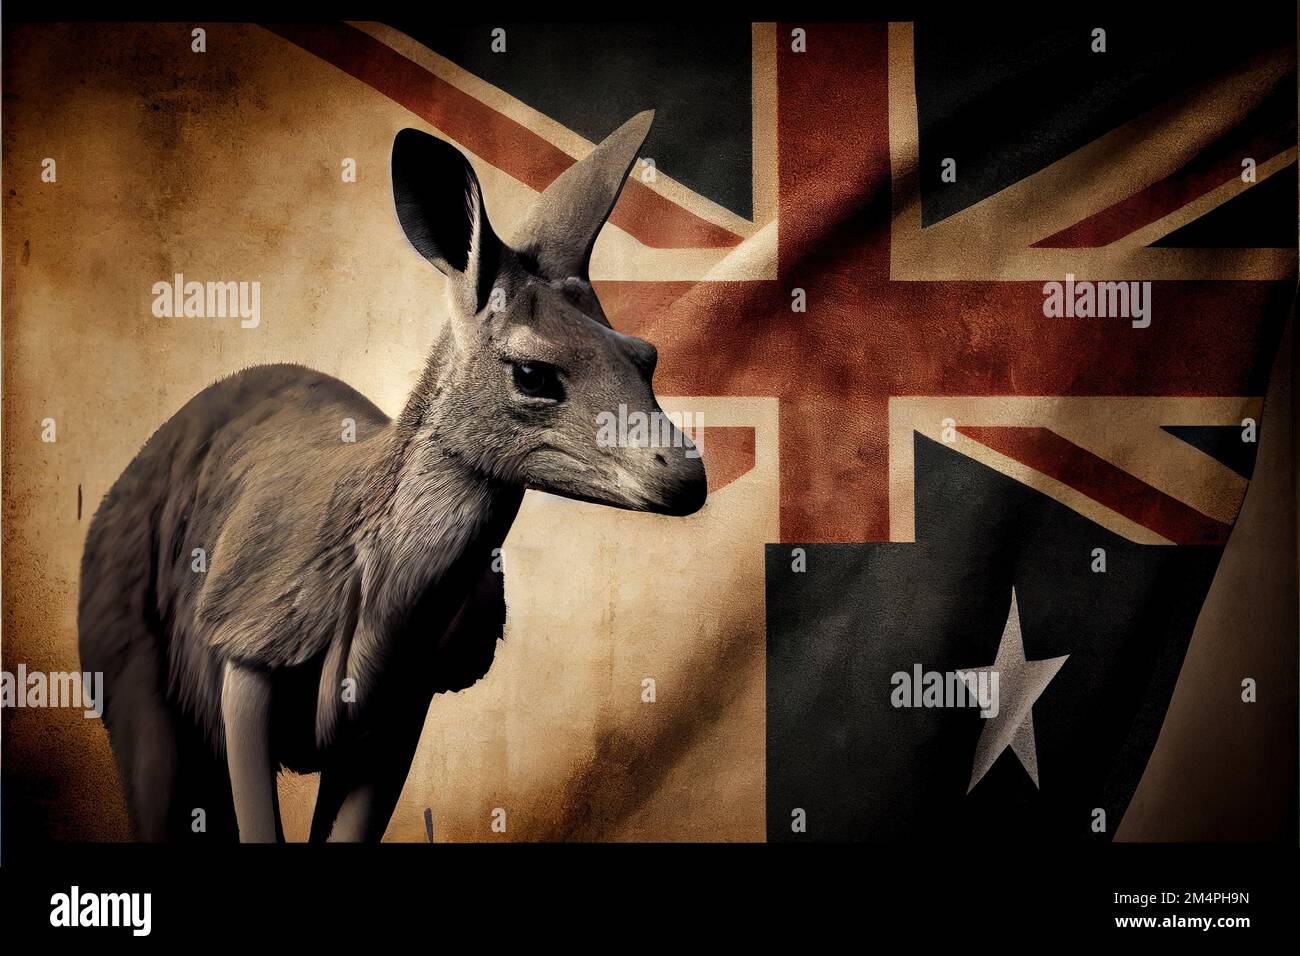 Kangaroo like animal hi-res stock photography and images - Alamy